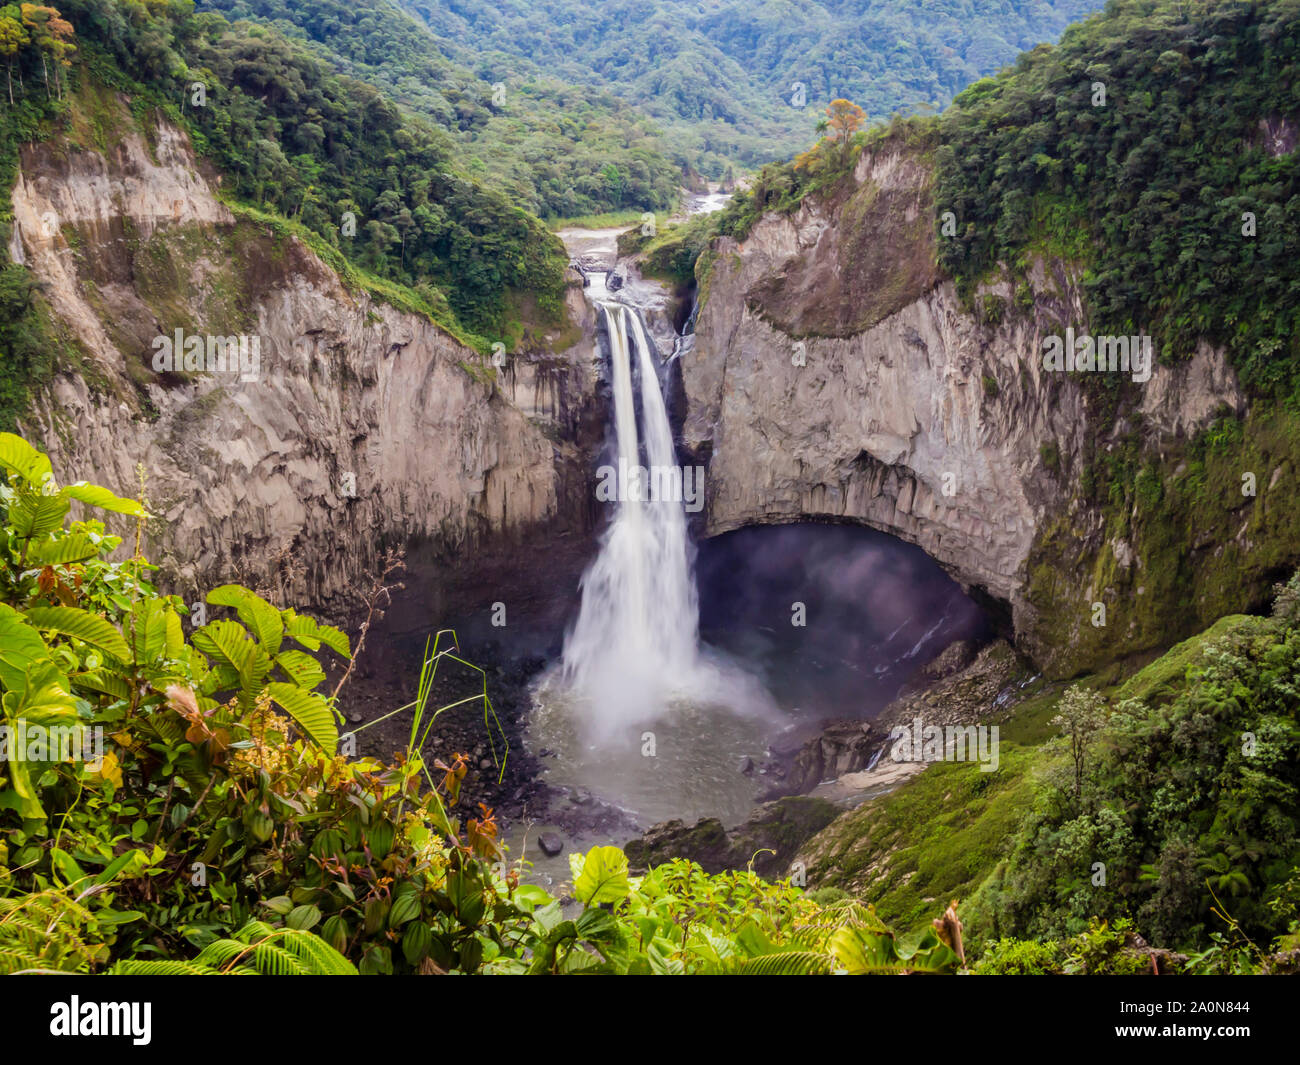 Majestic San Rafael de cascades dans la luxuriante forêt tropicale de l'Amazonie équatorienne Banque D'Images